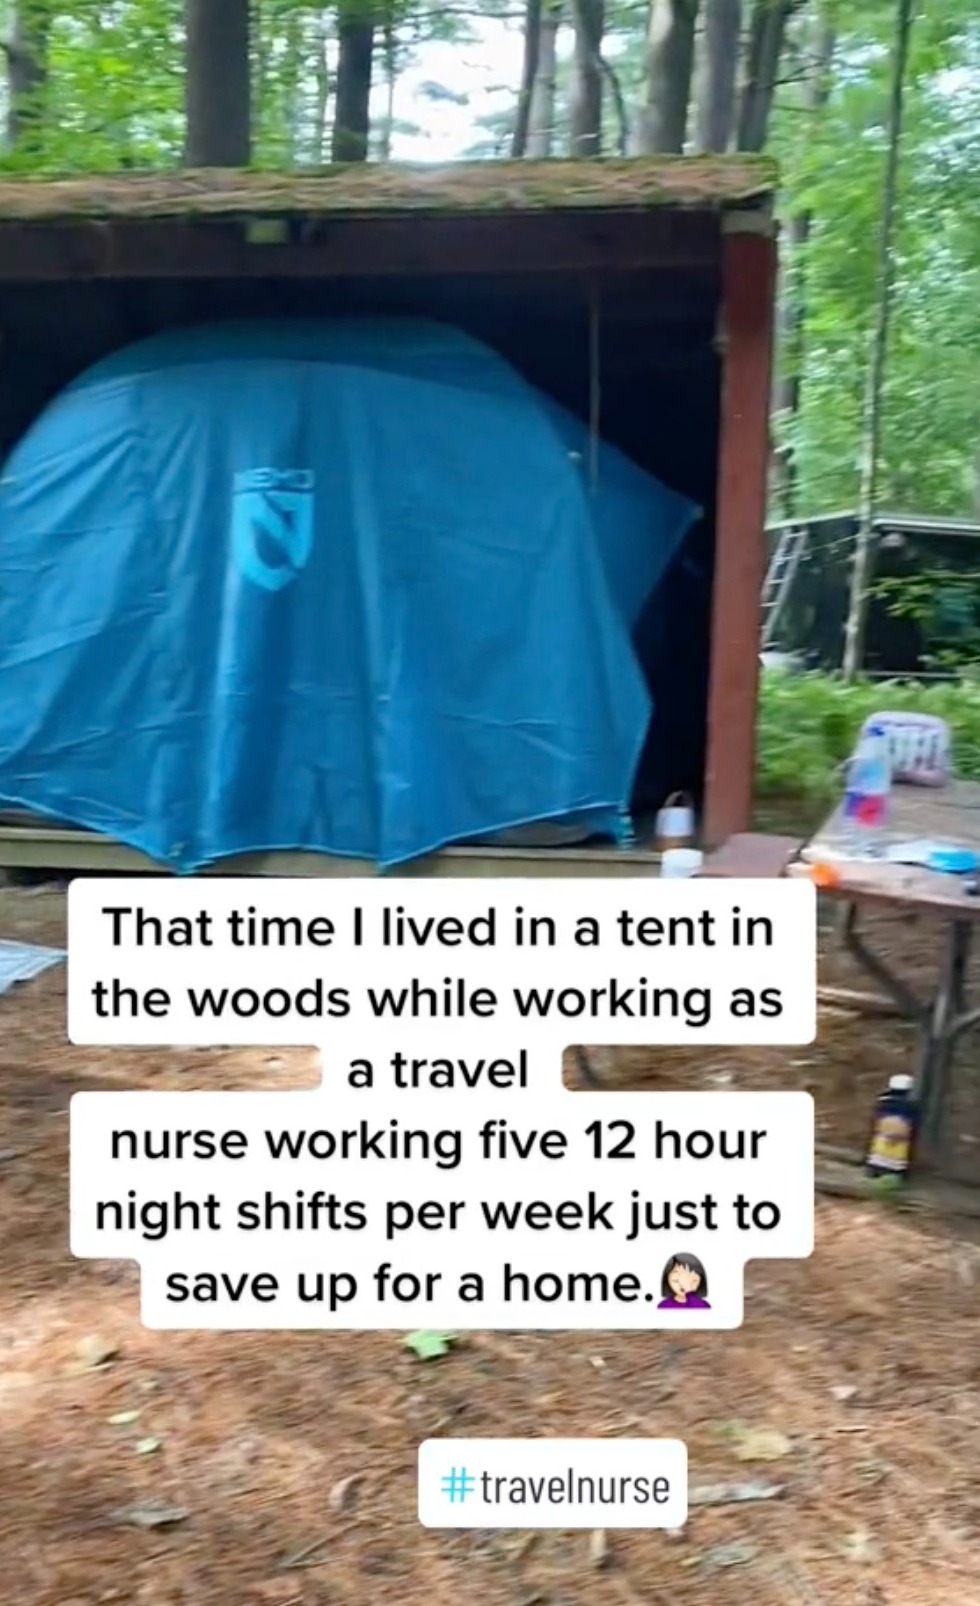 Sie lebte in einem Zelt im Wald, um für ein Haus zu sparen